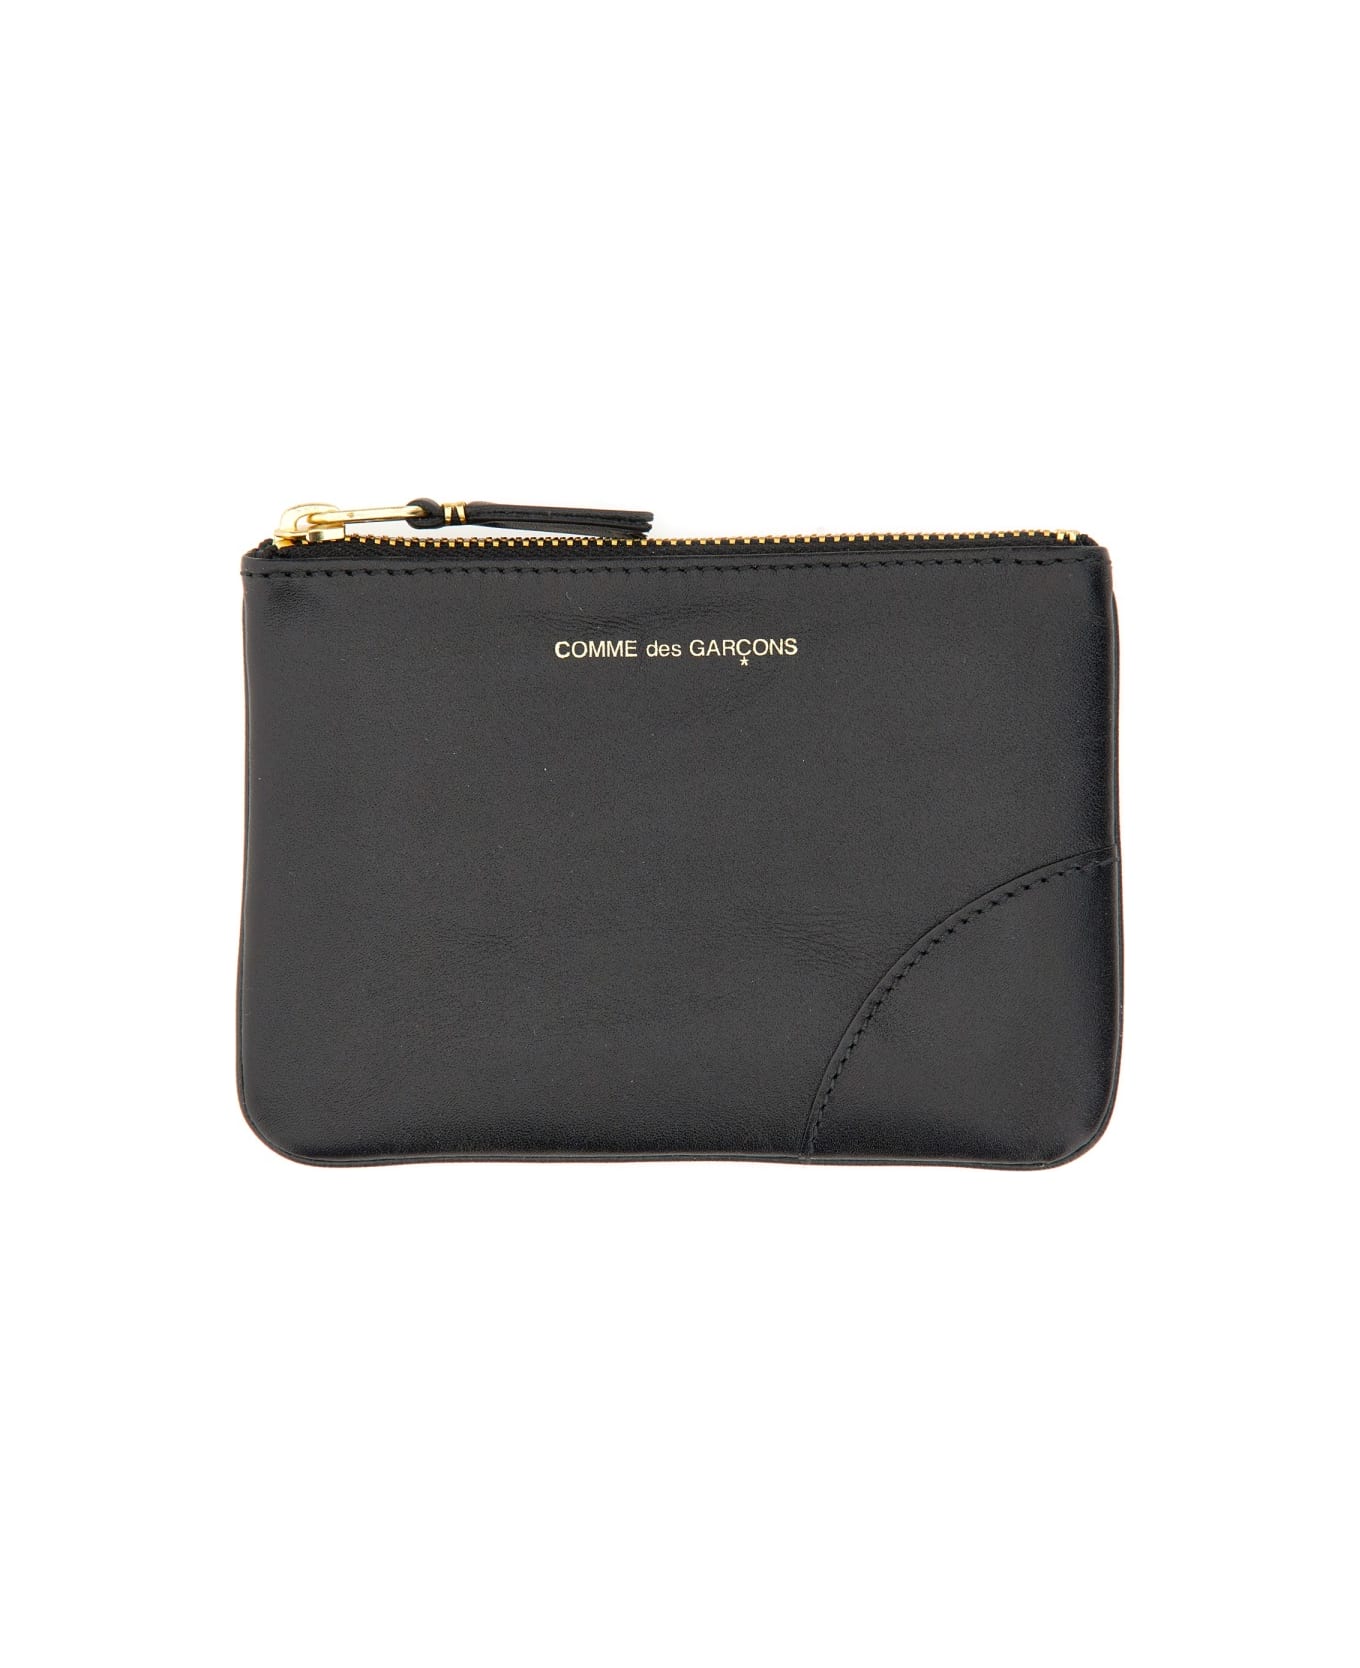 Comme des Garçons Wallet Small Clutch With Zipper - Black 財布